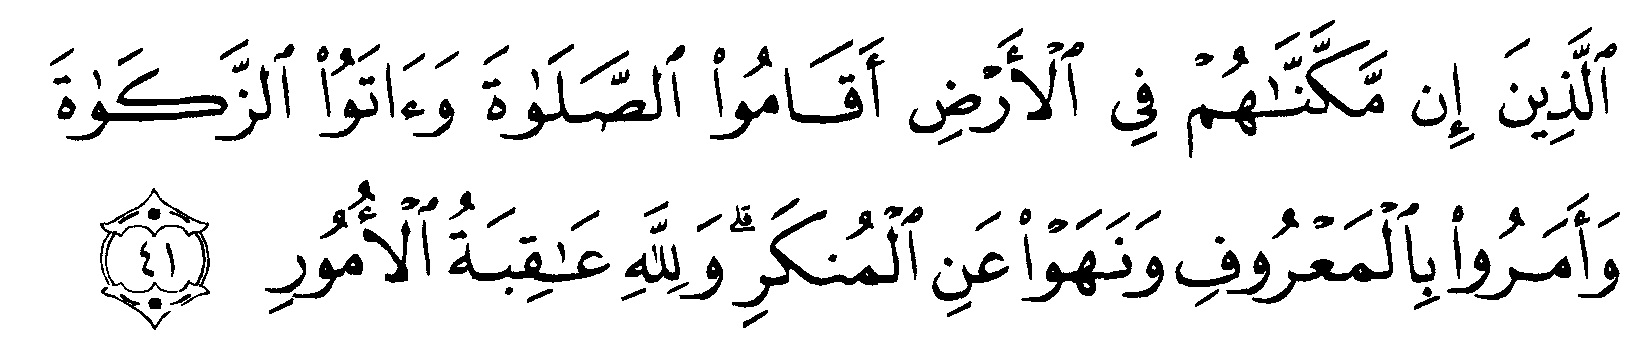 Tafsir Ibnu Katsir Surah Al-Hajj ayat 41 | alqur'anmulia